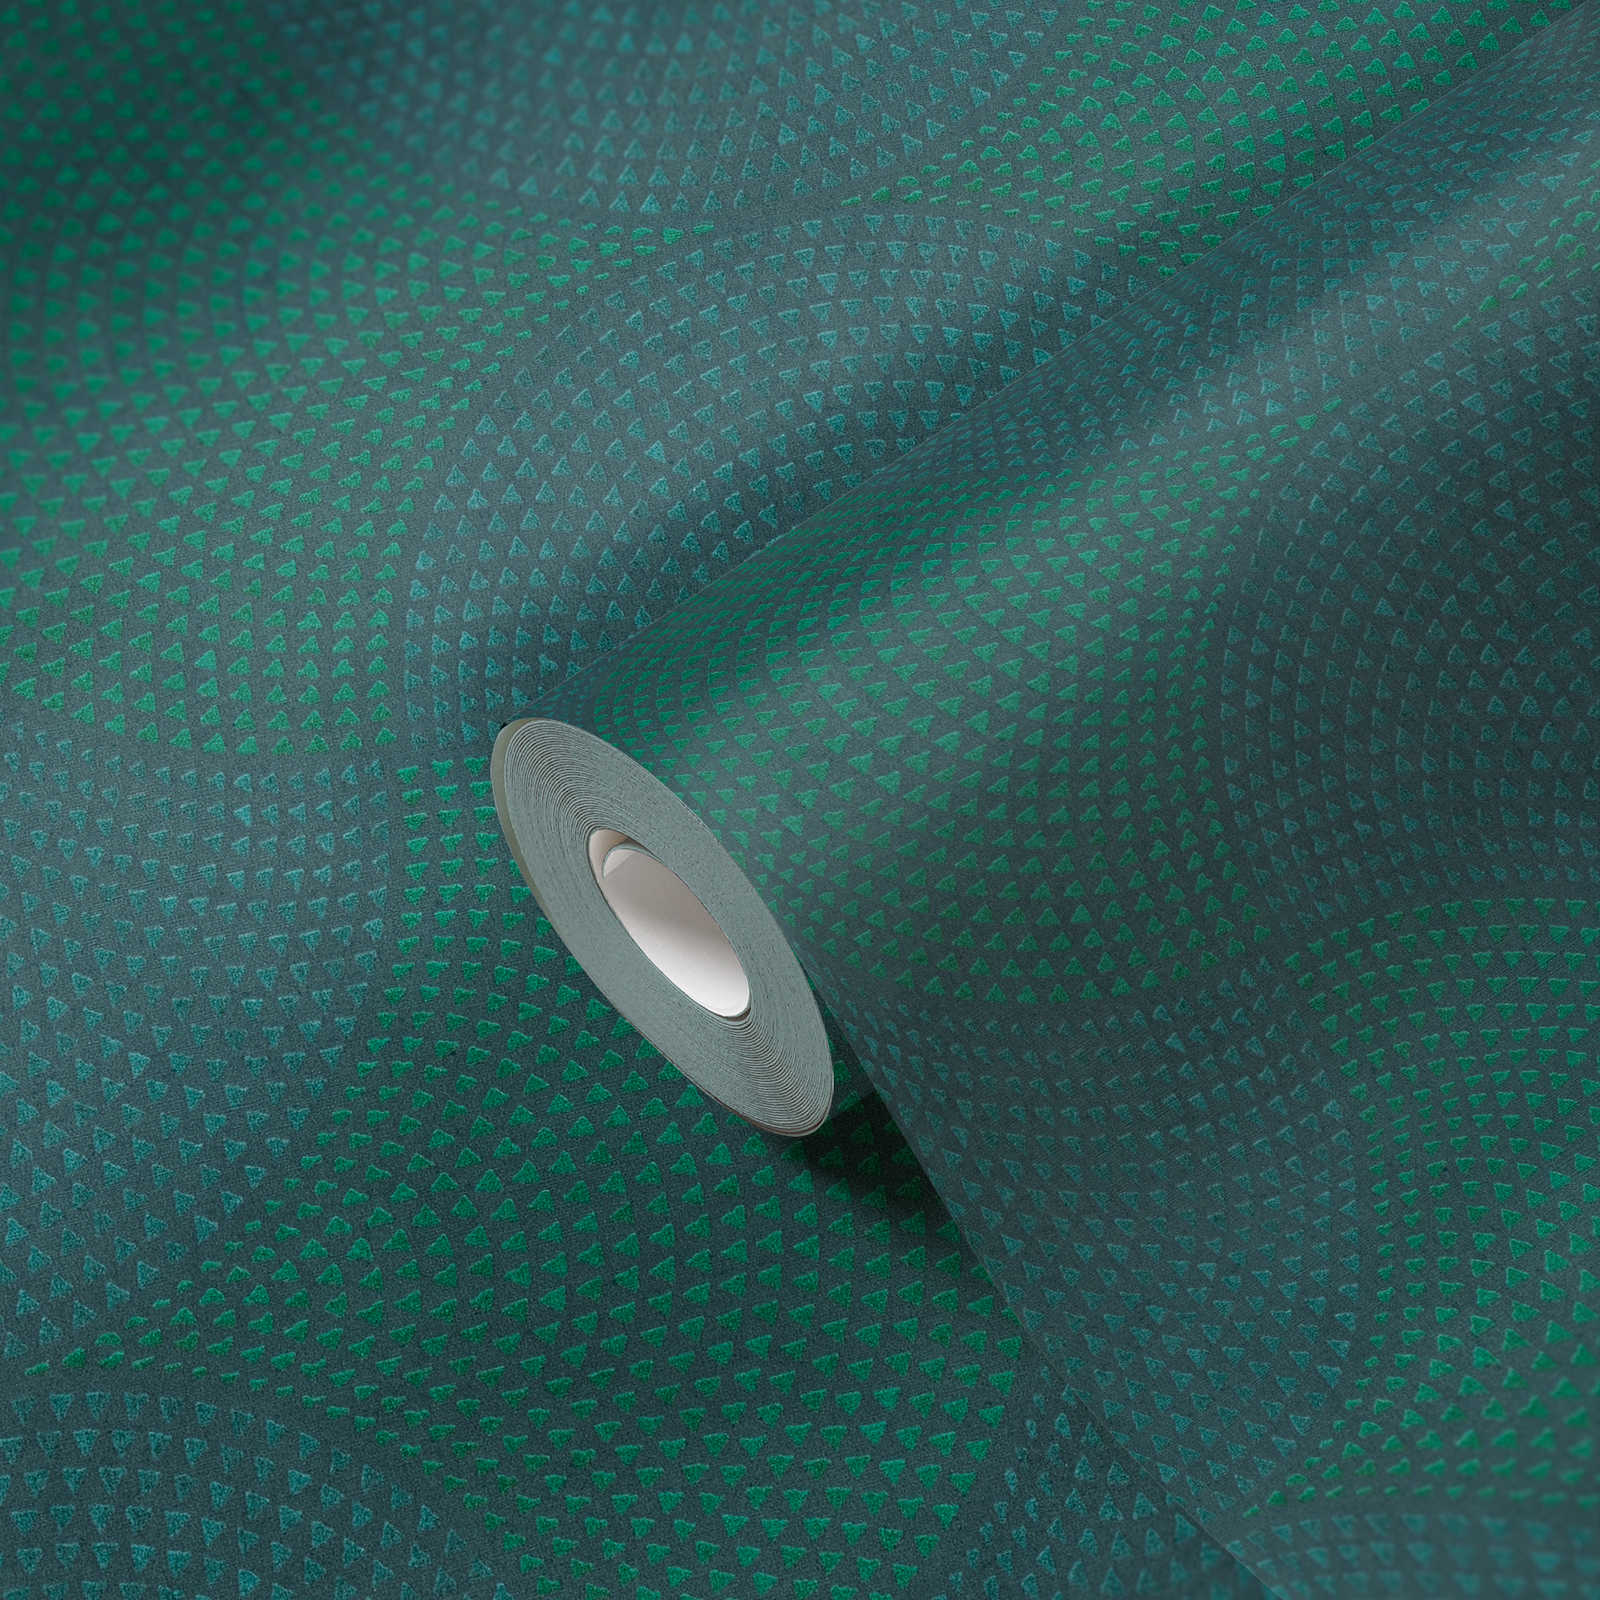             Vliesbehang metallic design met mozaïekpatroon - blauw, groen, metallic
        